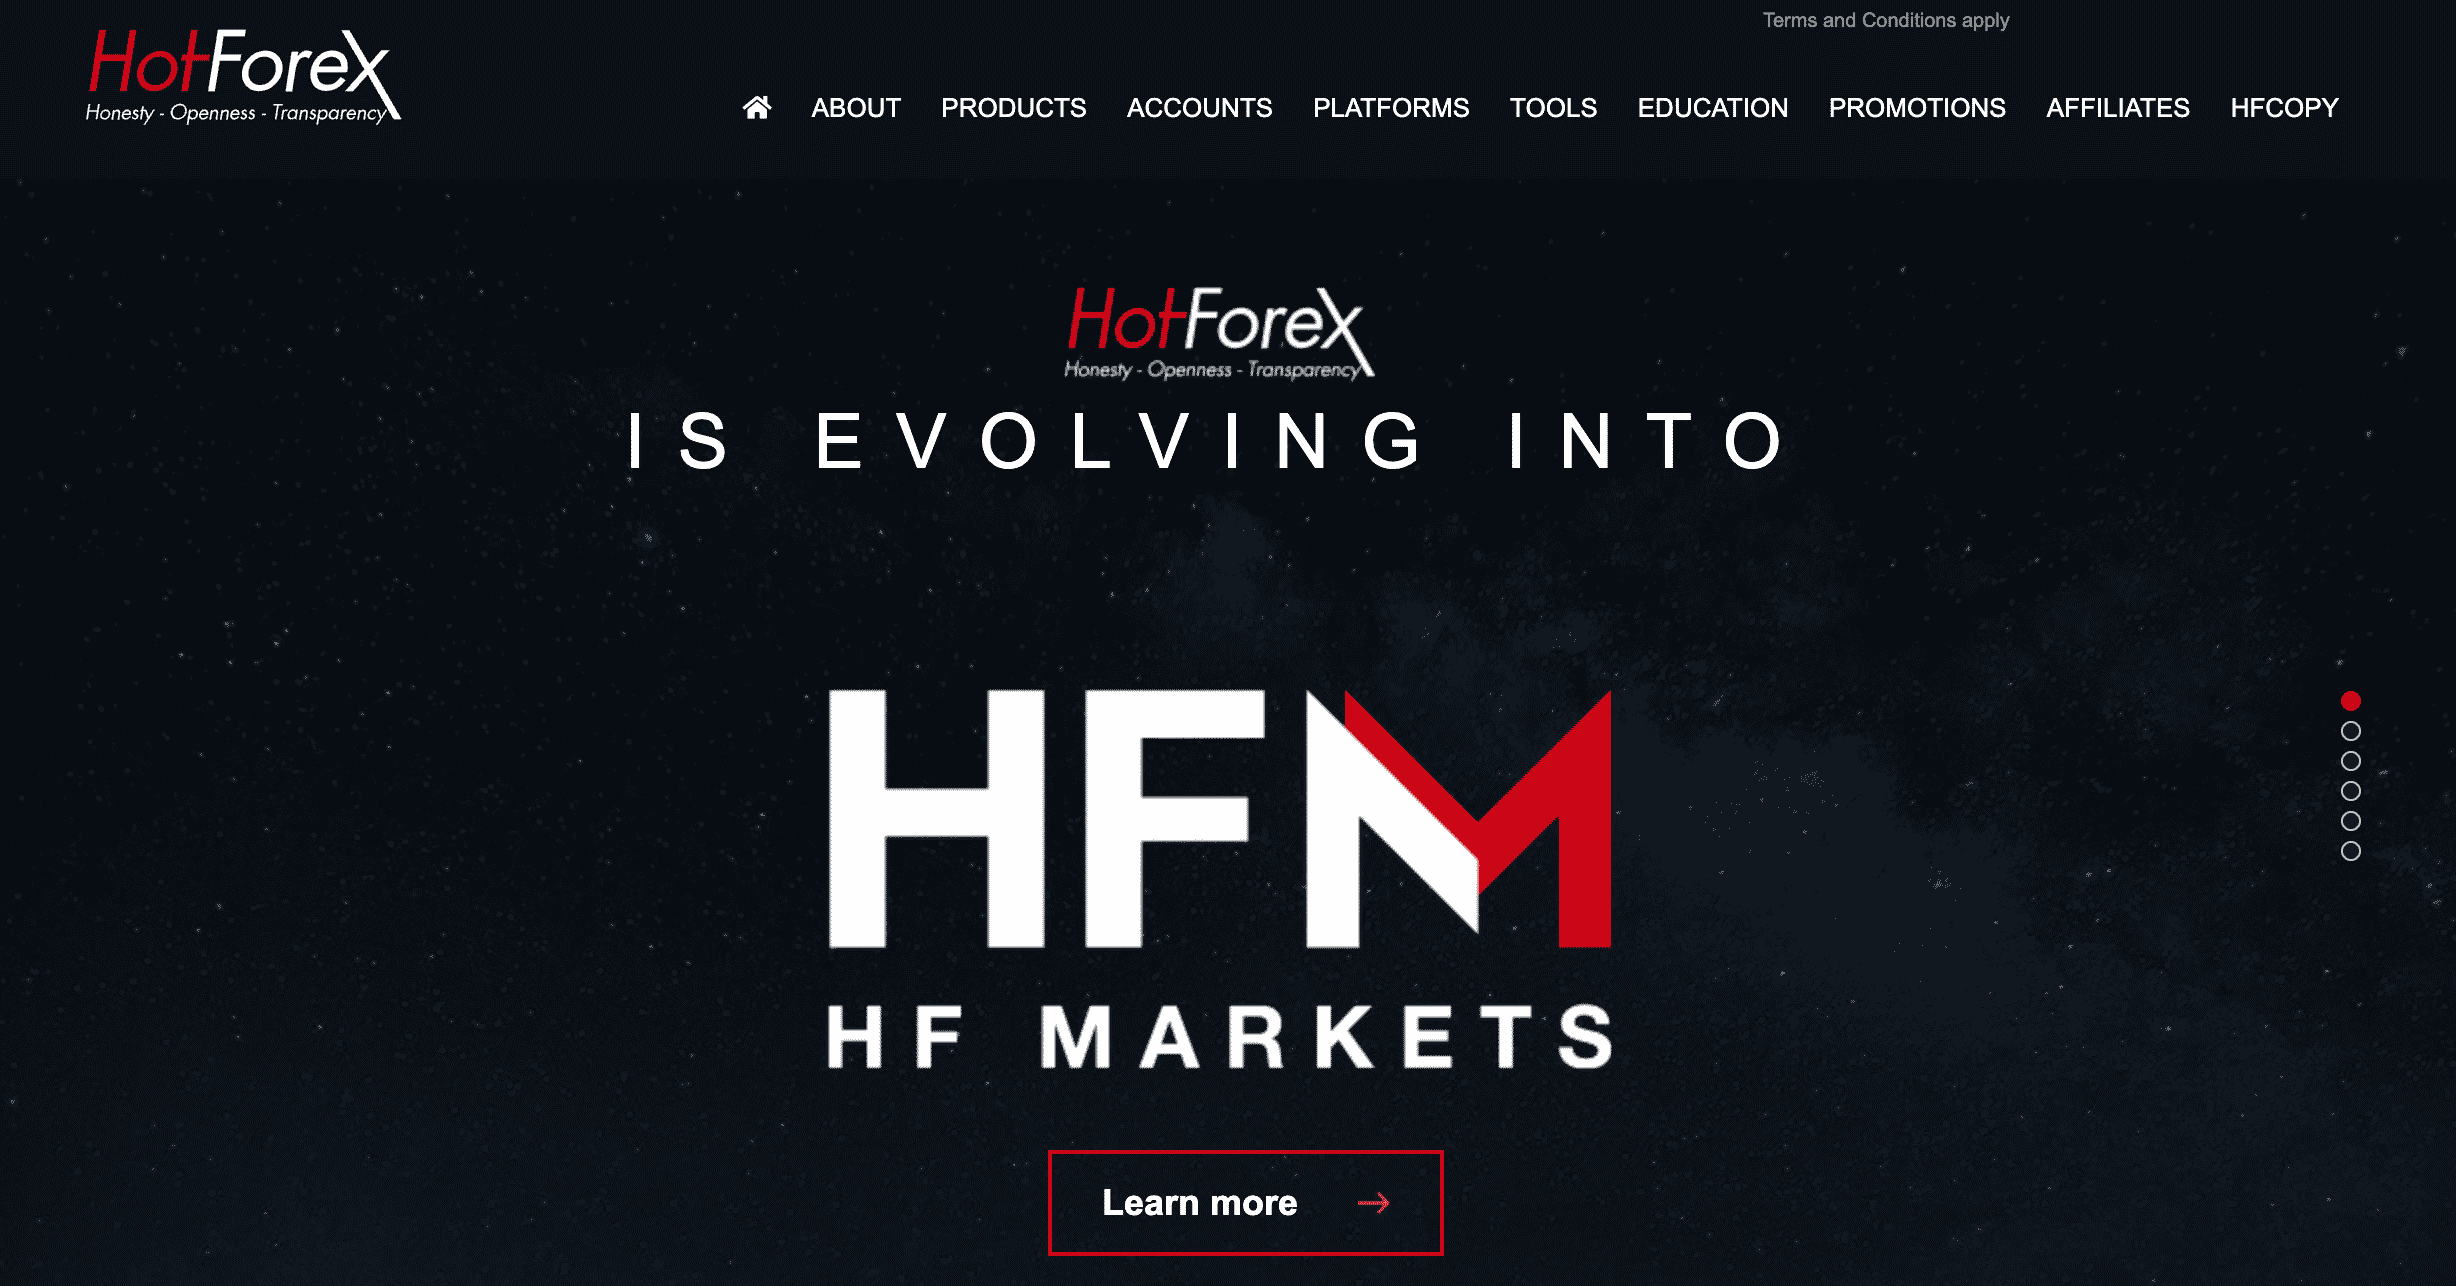 HotForex Overview